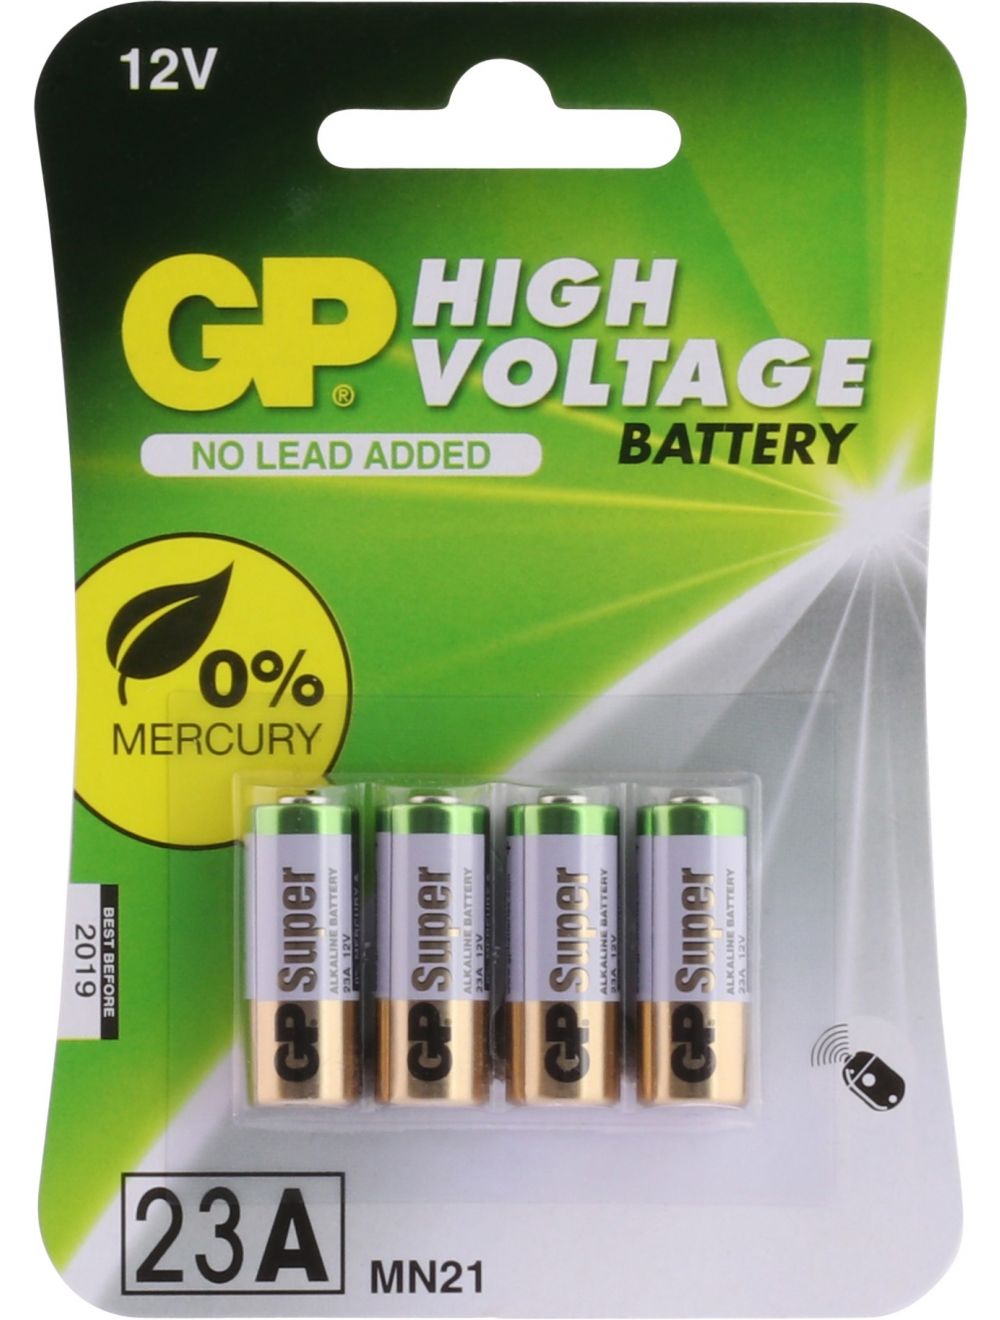 GP Alkaline 23A Rondcel Batterij 12V 4 stuks kopen? Multitools.nl